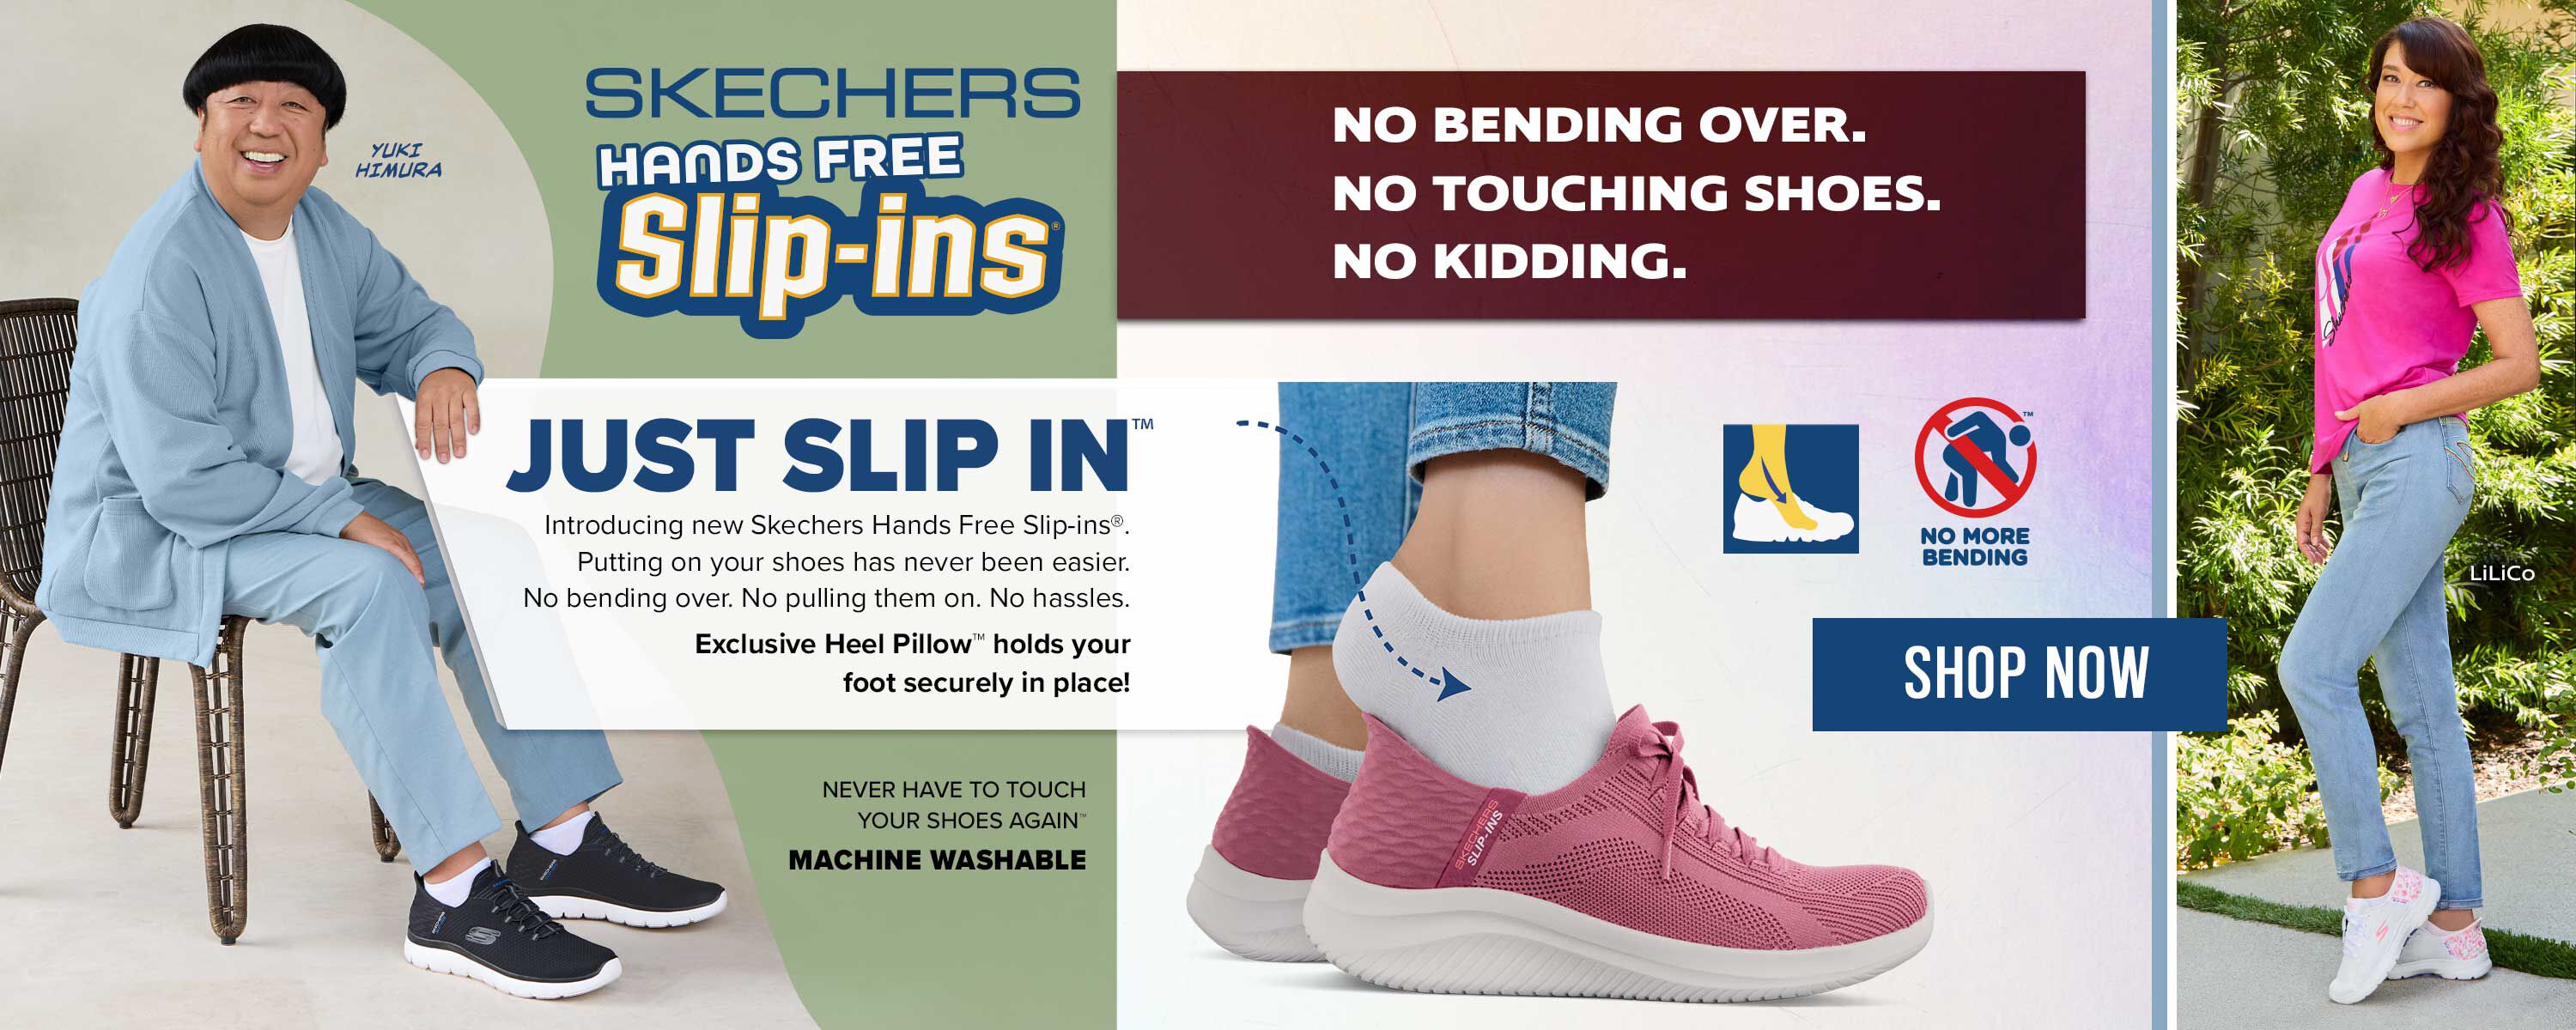 Skechers Hands Free Slip-ins - Shop Now